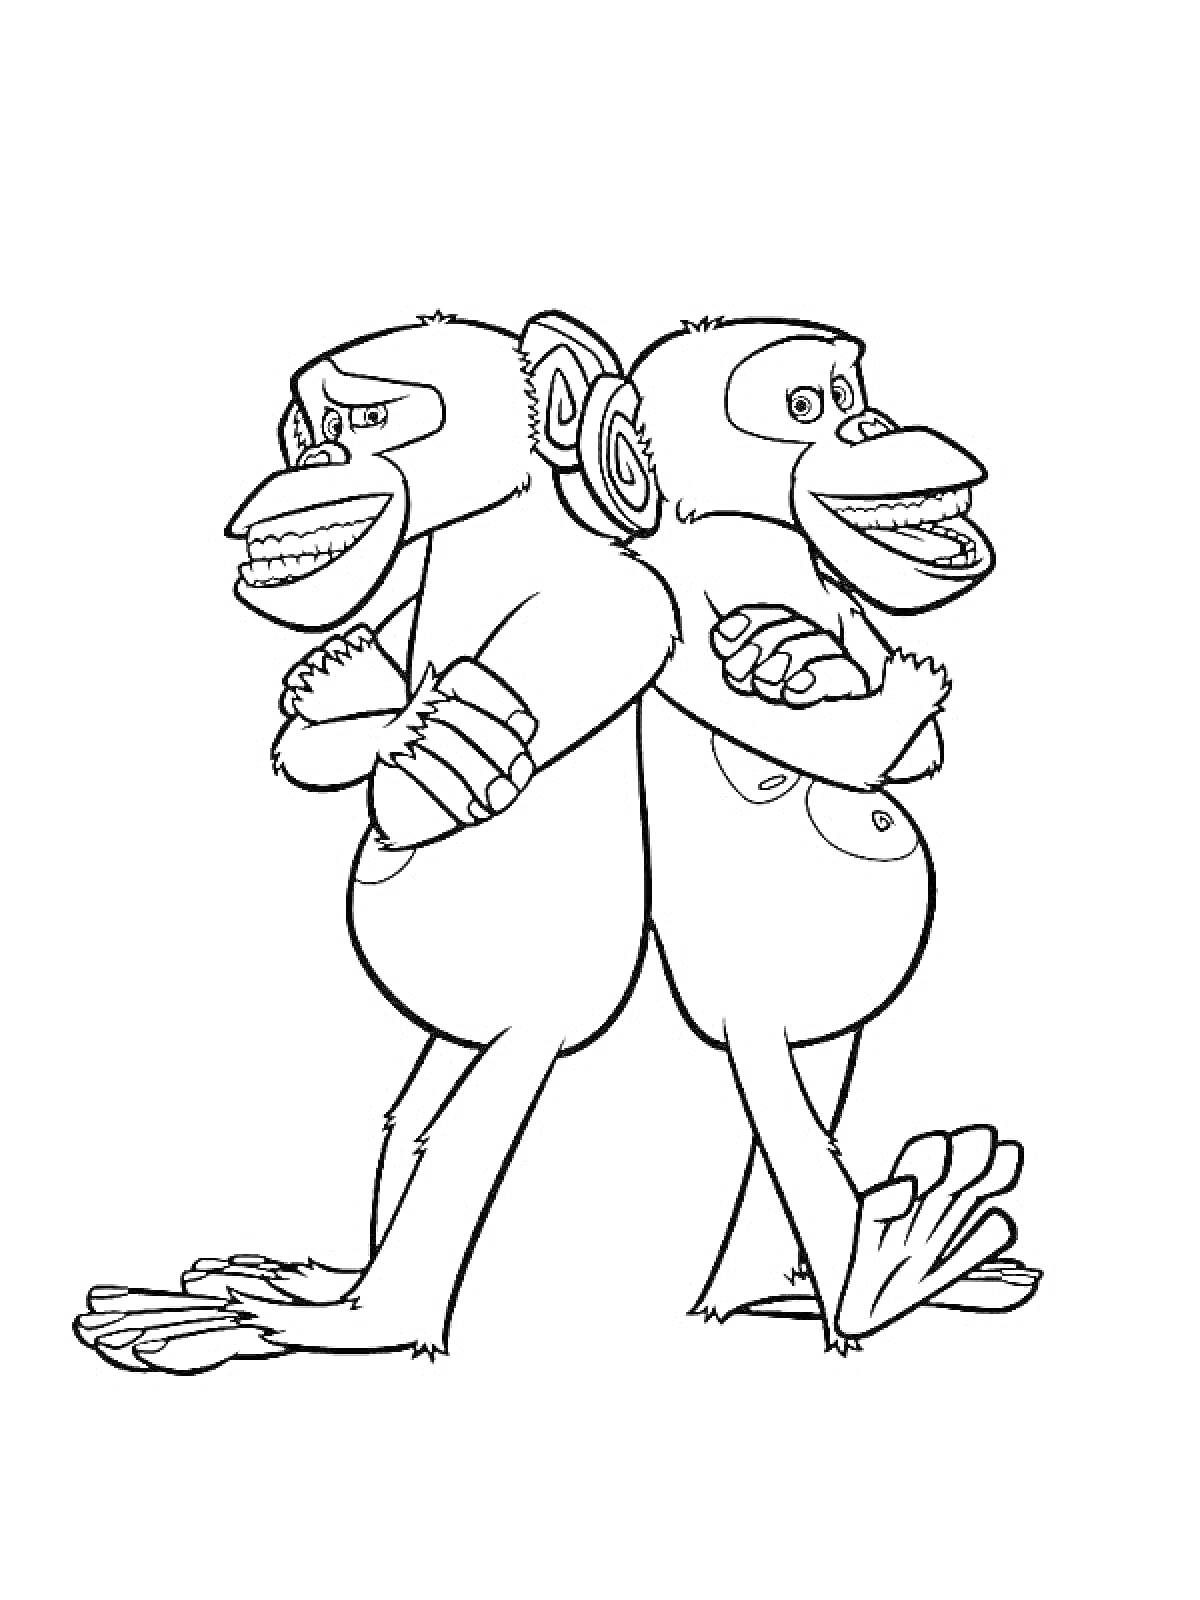 Раскраска Два шимпанзе, стоящие спина к спине с перекрещенными руками